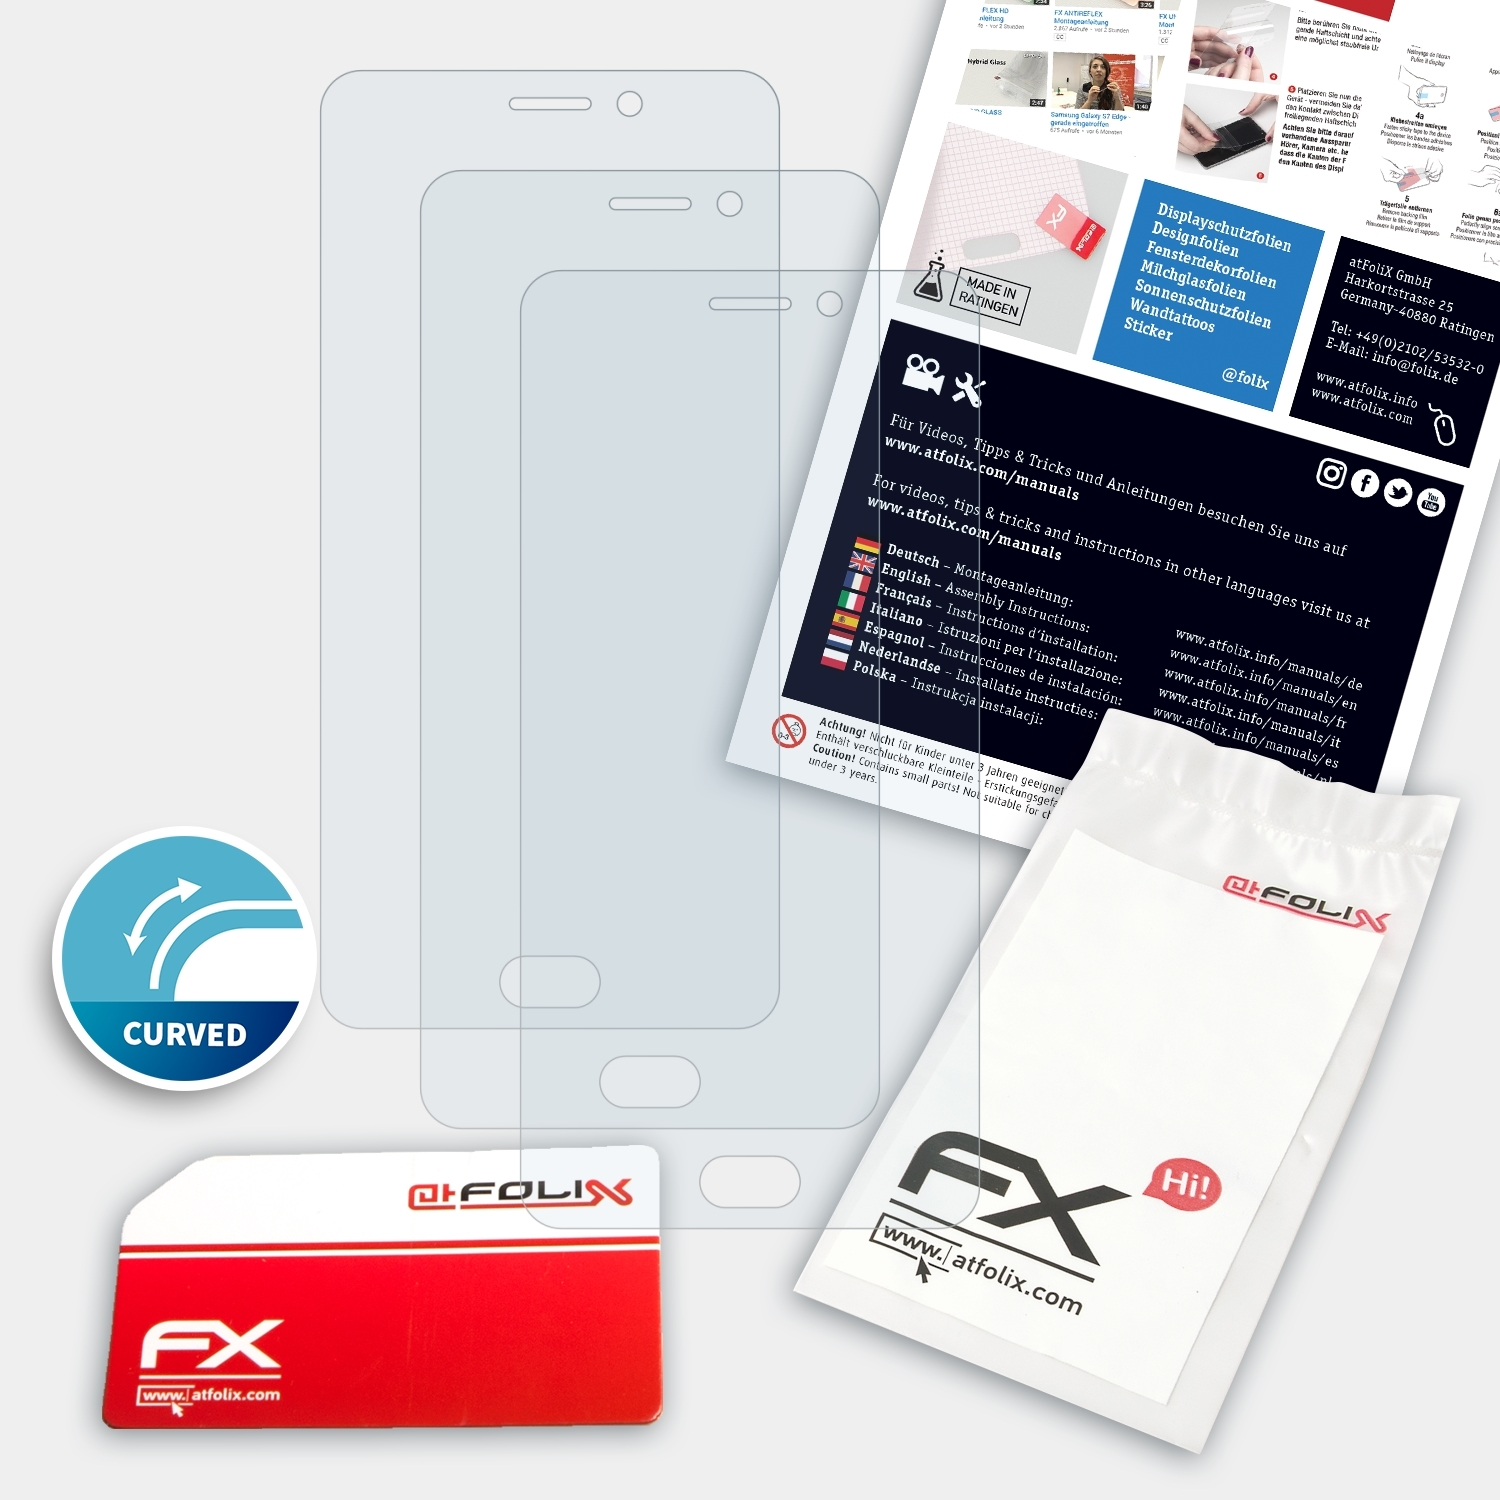 ATFOLIX 3x FX-ActiFleX Displayschutz(für Note) M6 Meizu